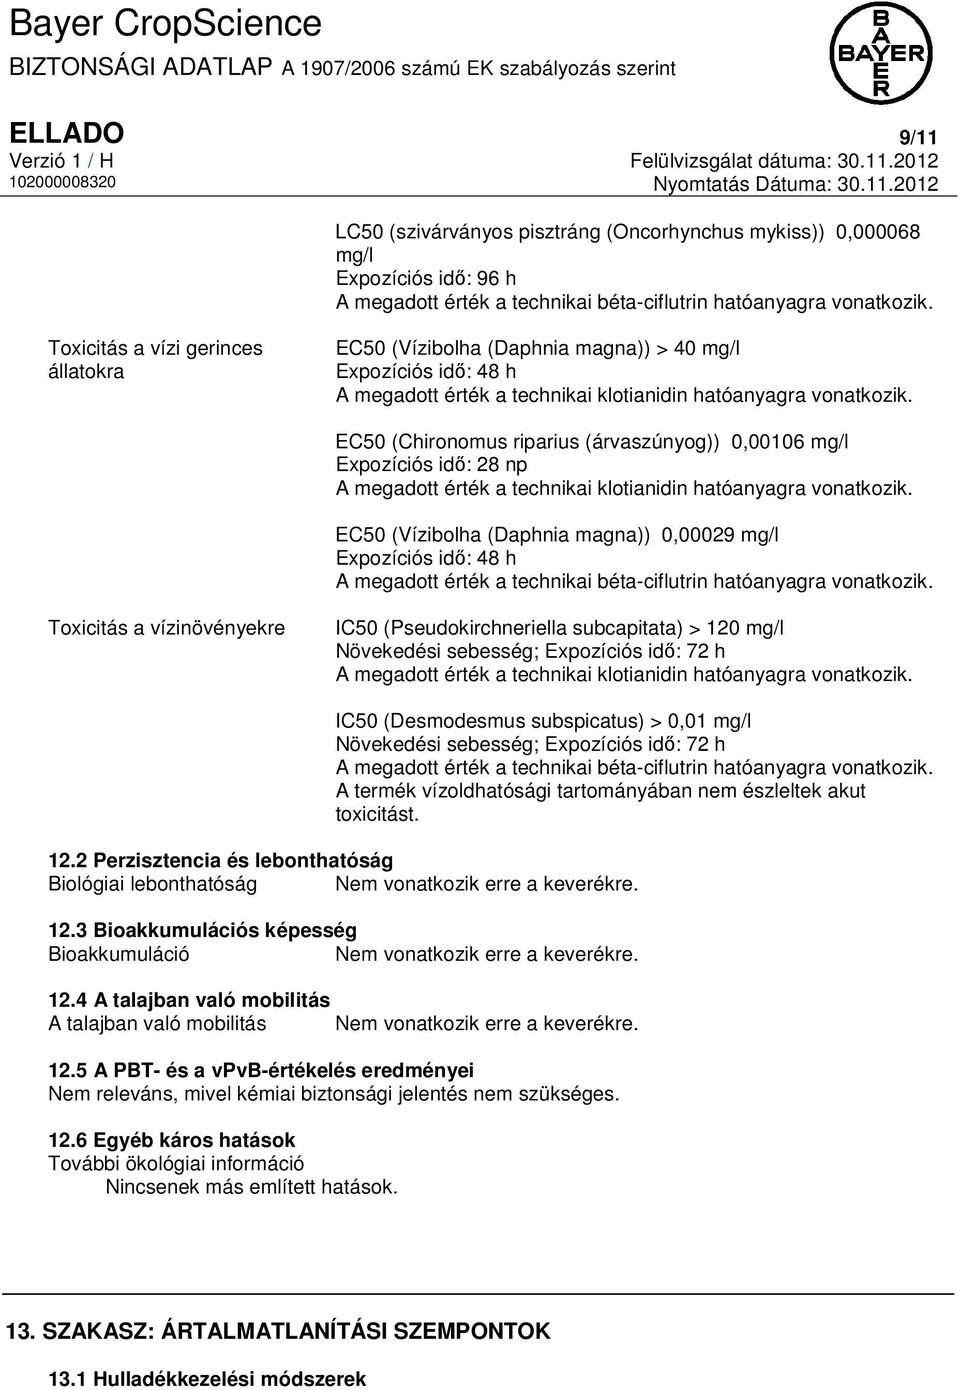 EC50 (Chironomus riparius (árvaszúnyog)) 0,00106 mg/l Expozíciós idő: 28 np A megadott érték a technikai klotianidin hatóanyagra vonatkozik.